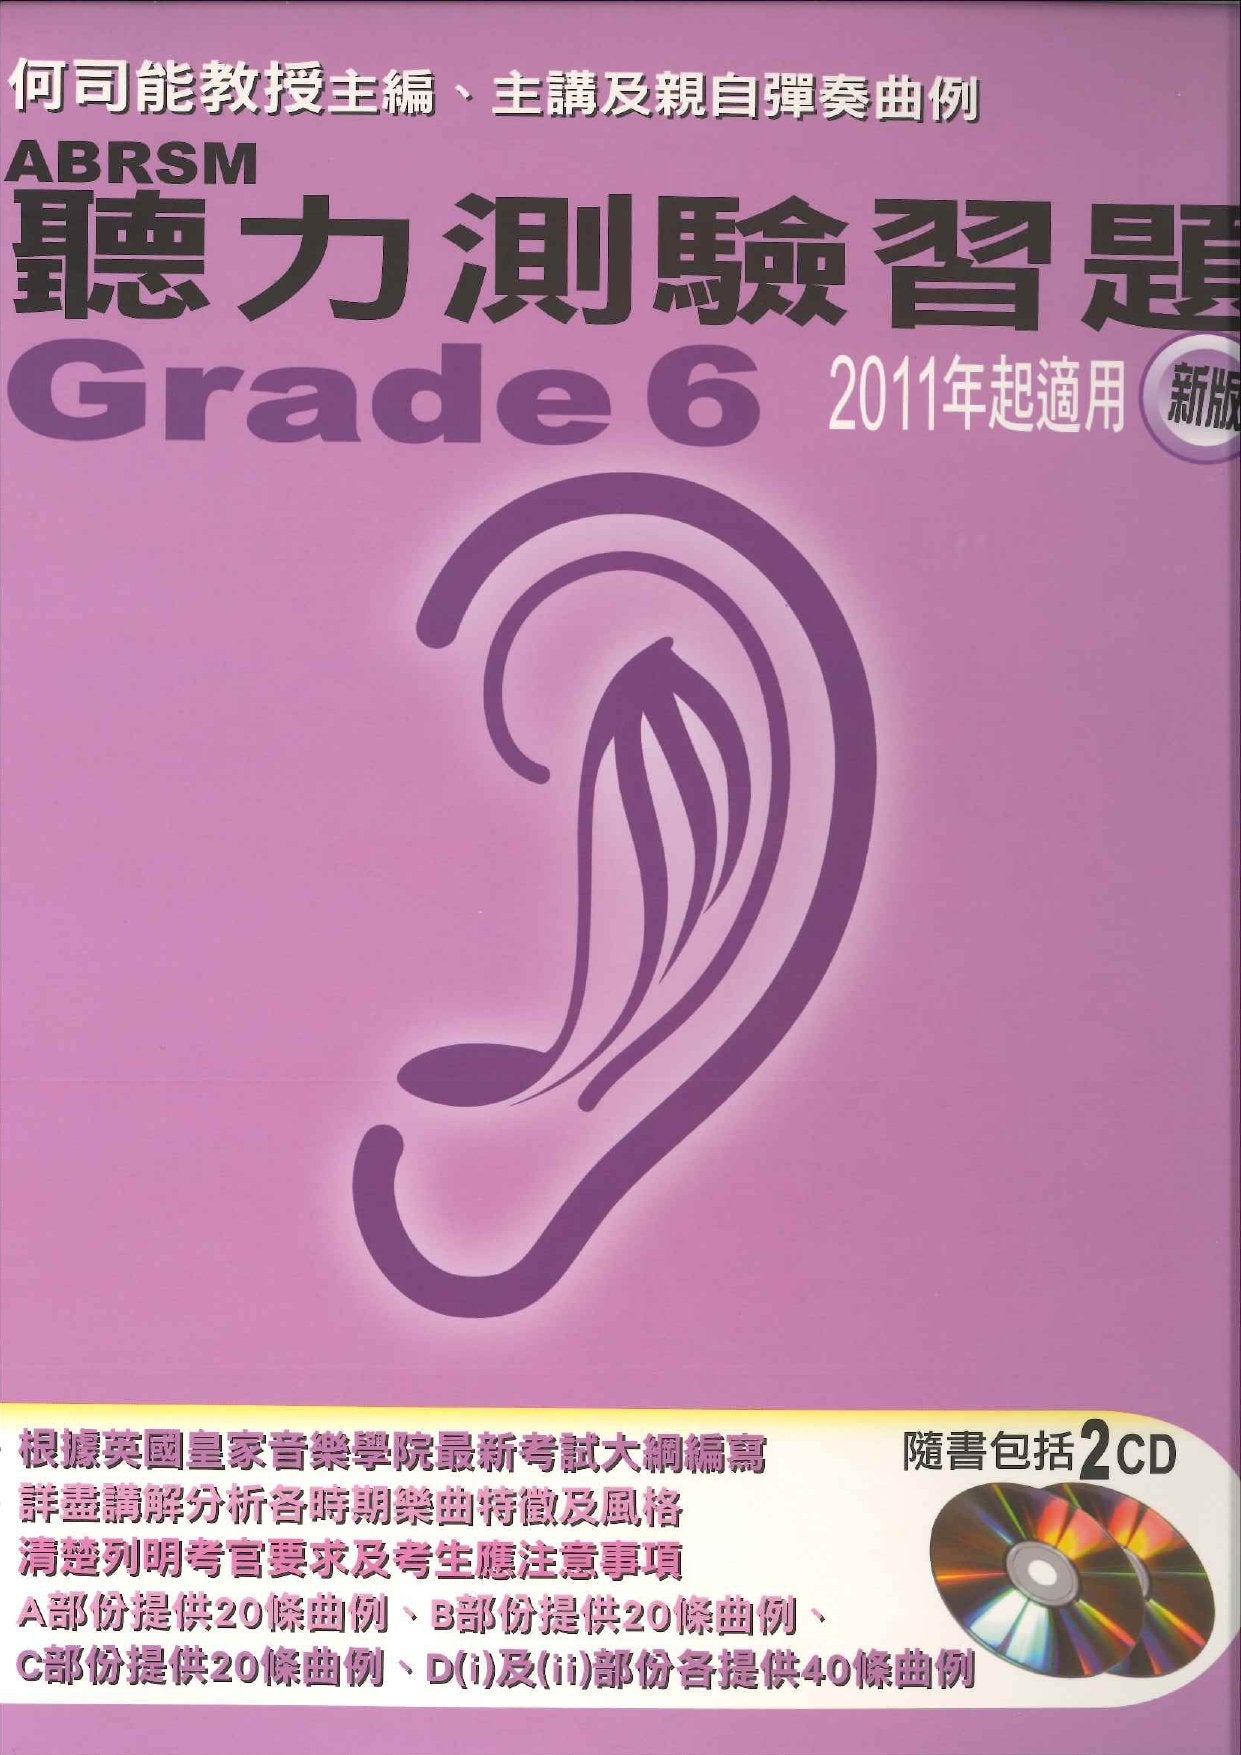 ABRSM 聽力測驗習題 Grade 6 連2CDs (2011新版)